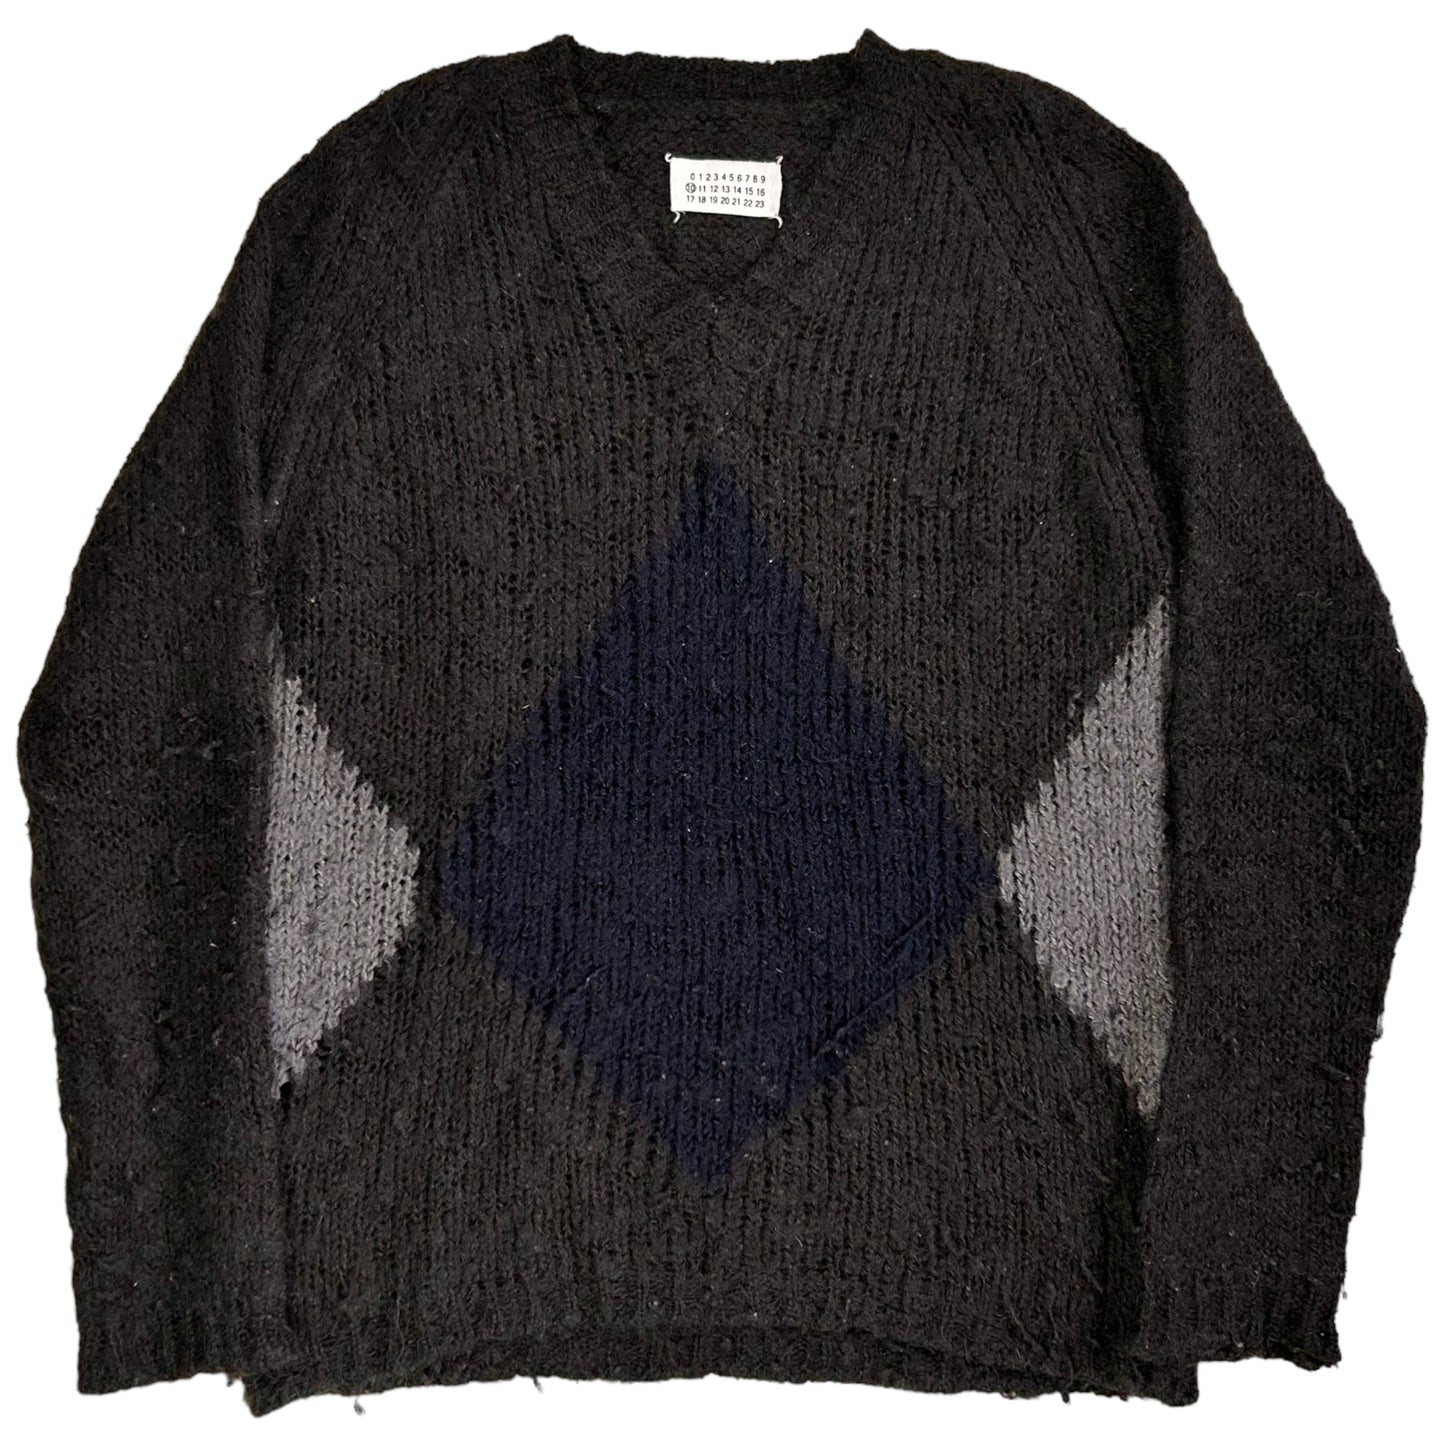 Maison Martin Margiela Argyle Grunge Knit Sweater - AW08